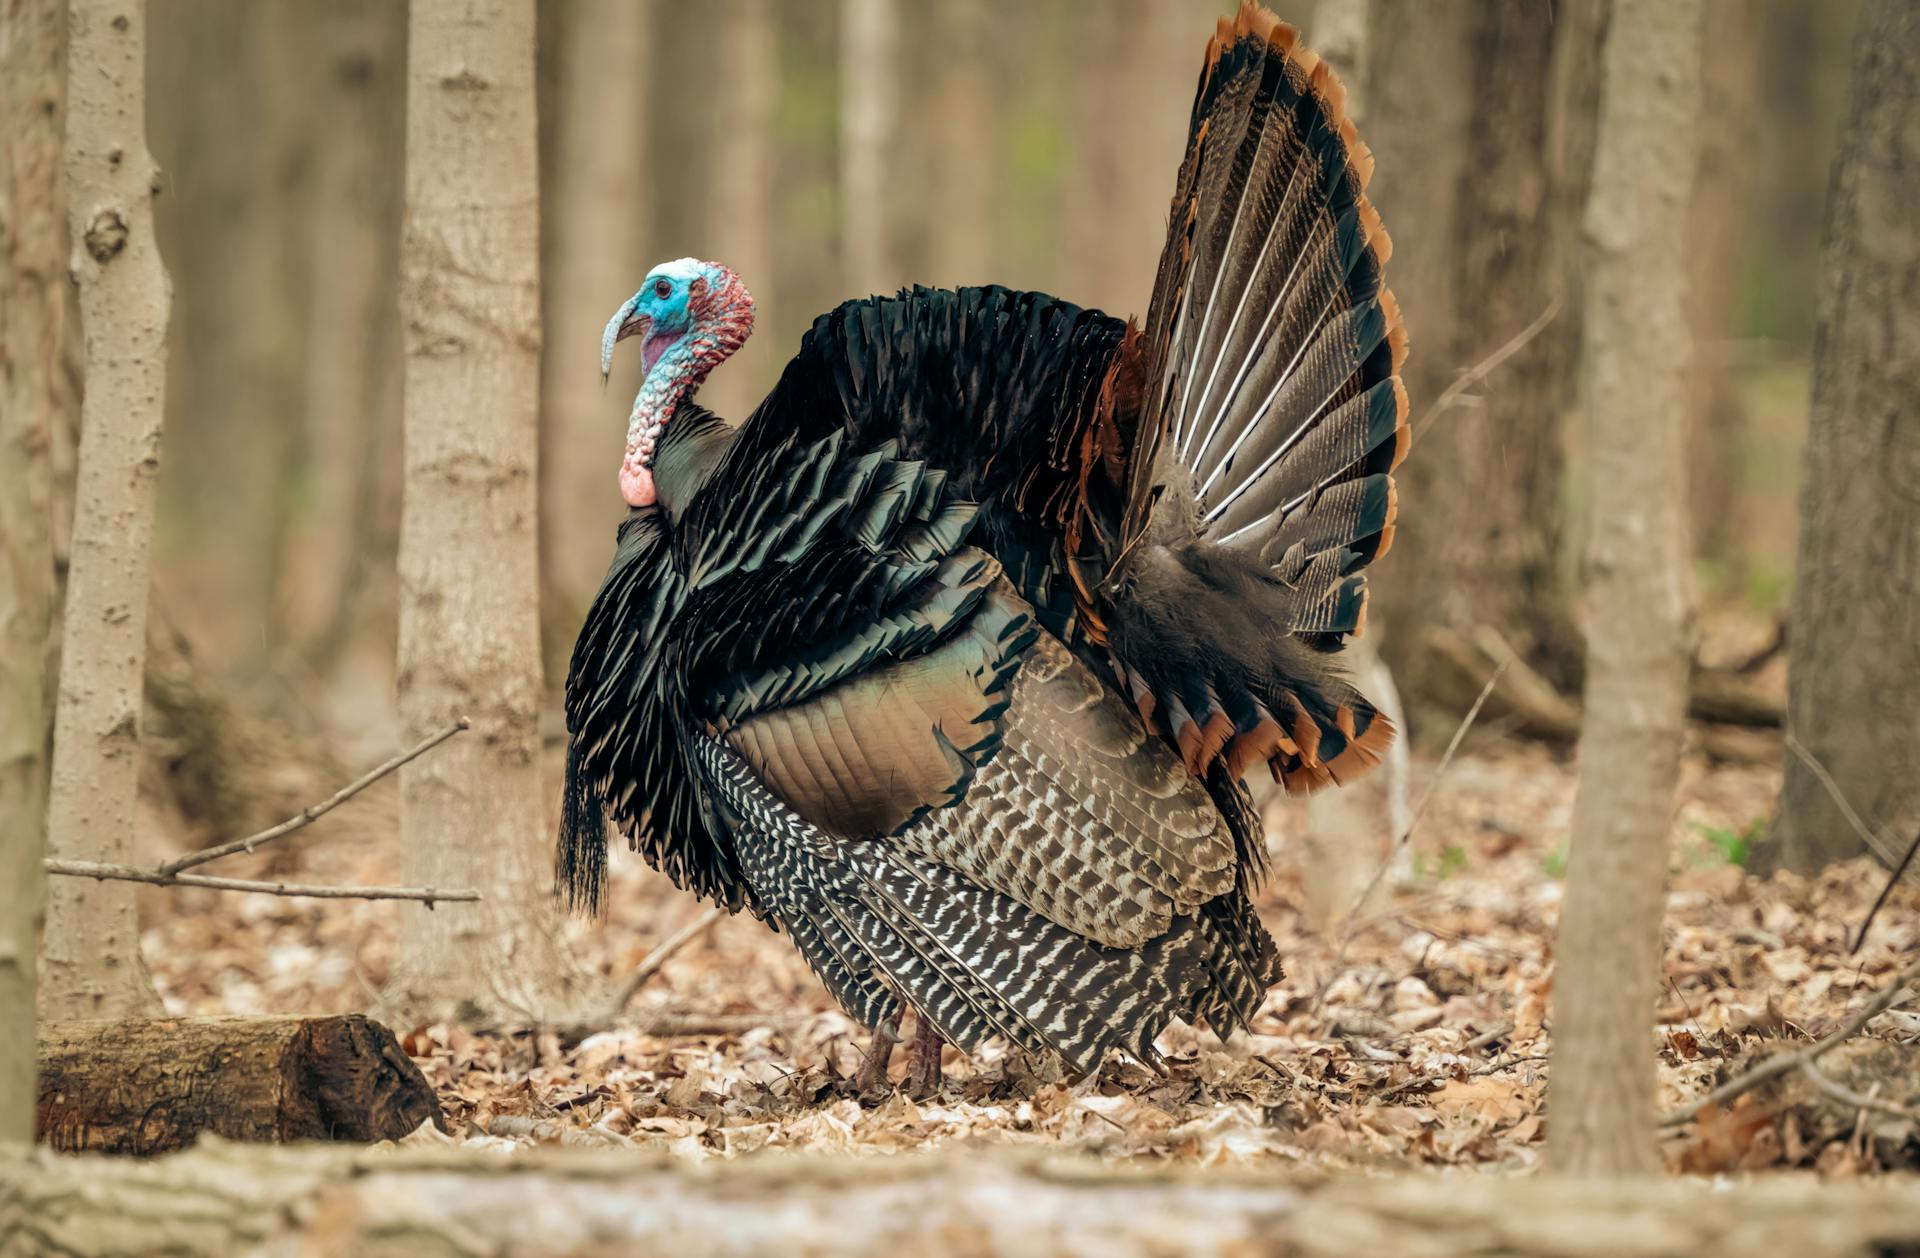 Turkey on the loose